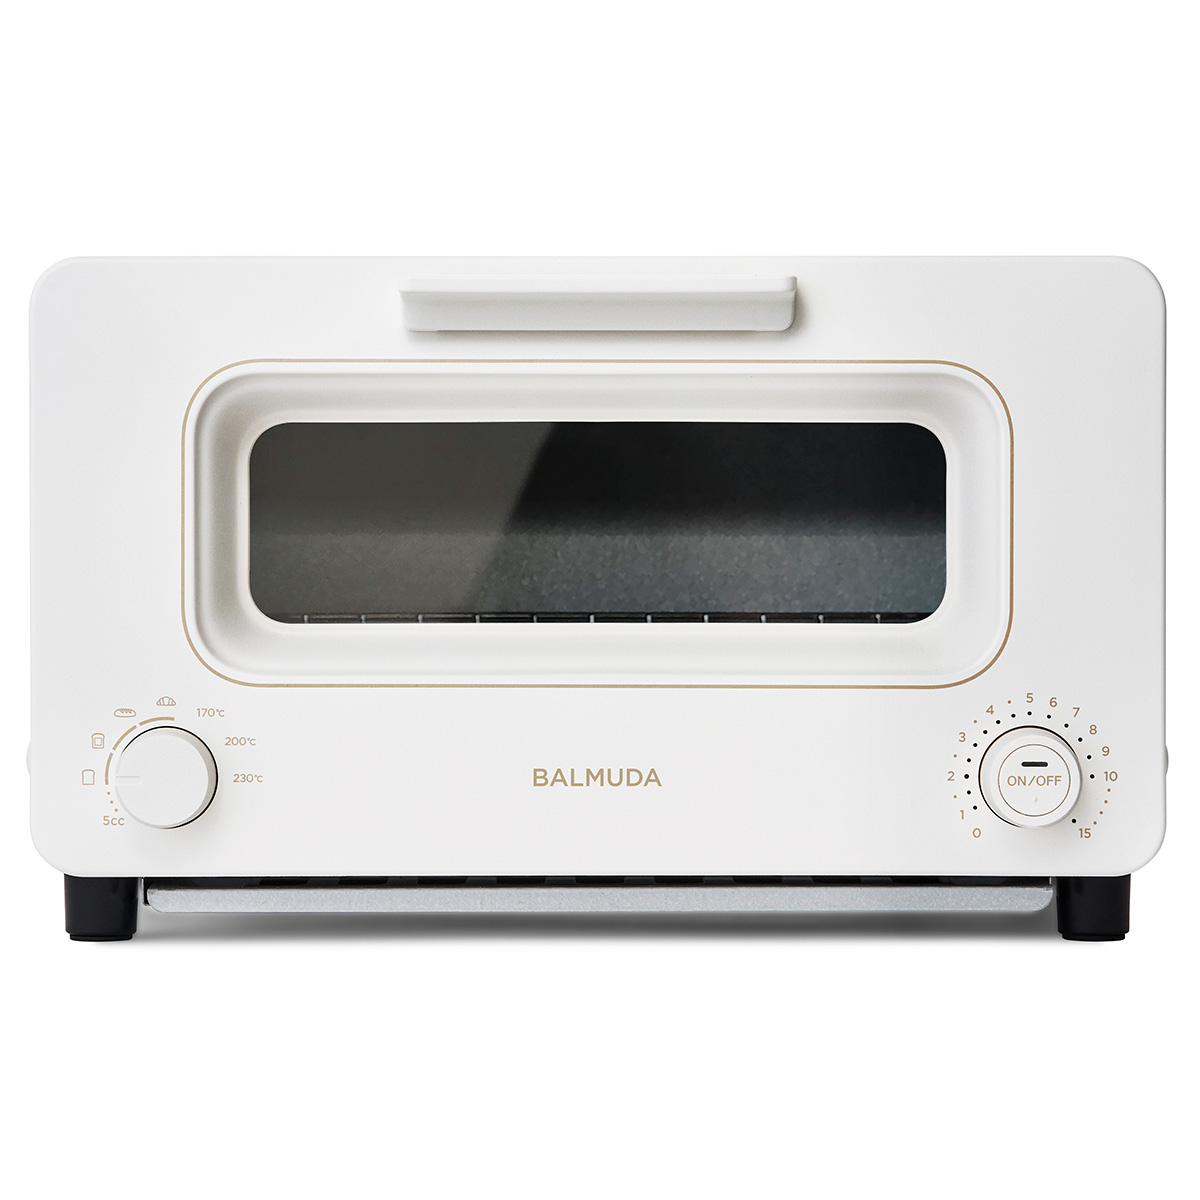 ザ・トースター [30日間全額返金保証] 正規品 「BALMUDA The Toaster」 ホワイト